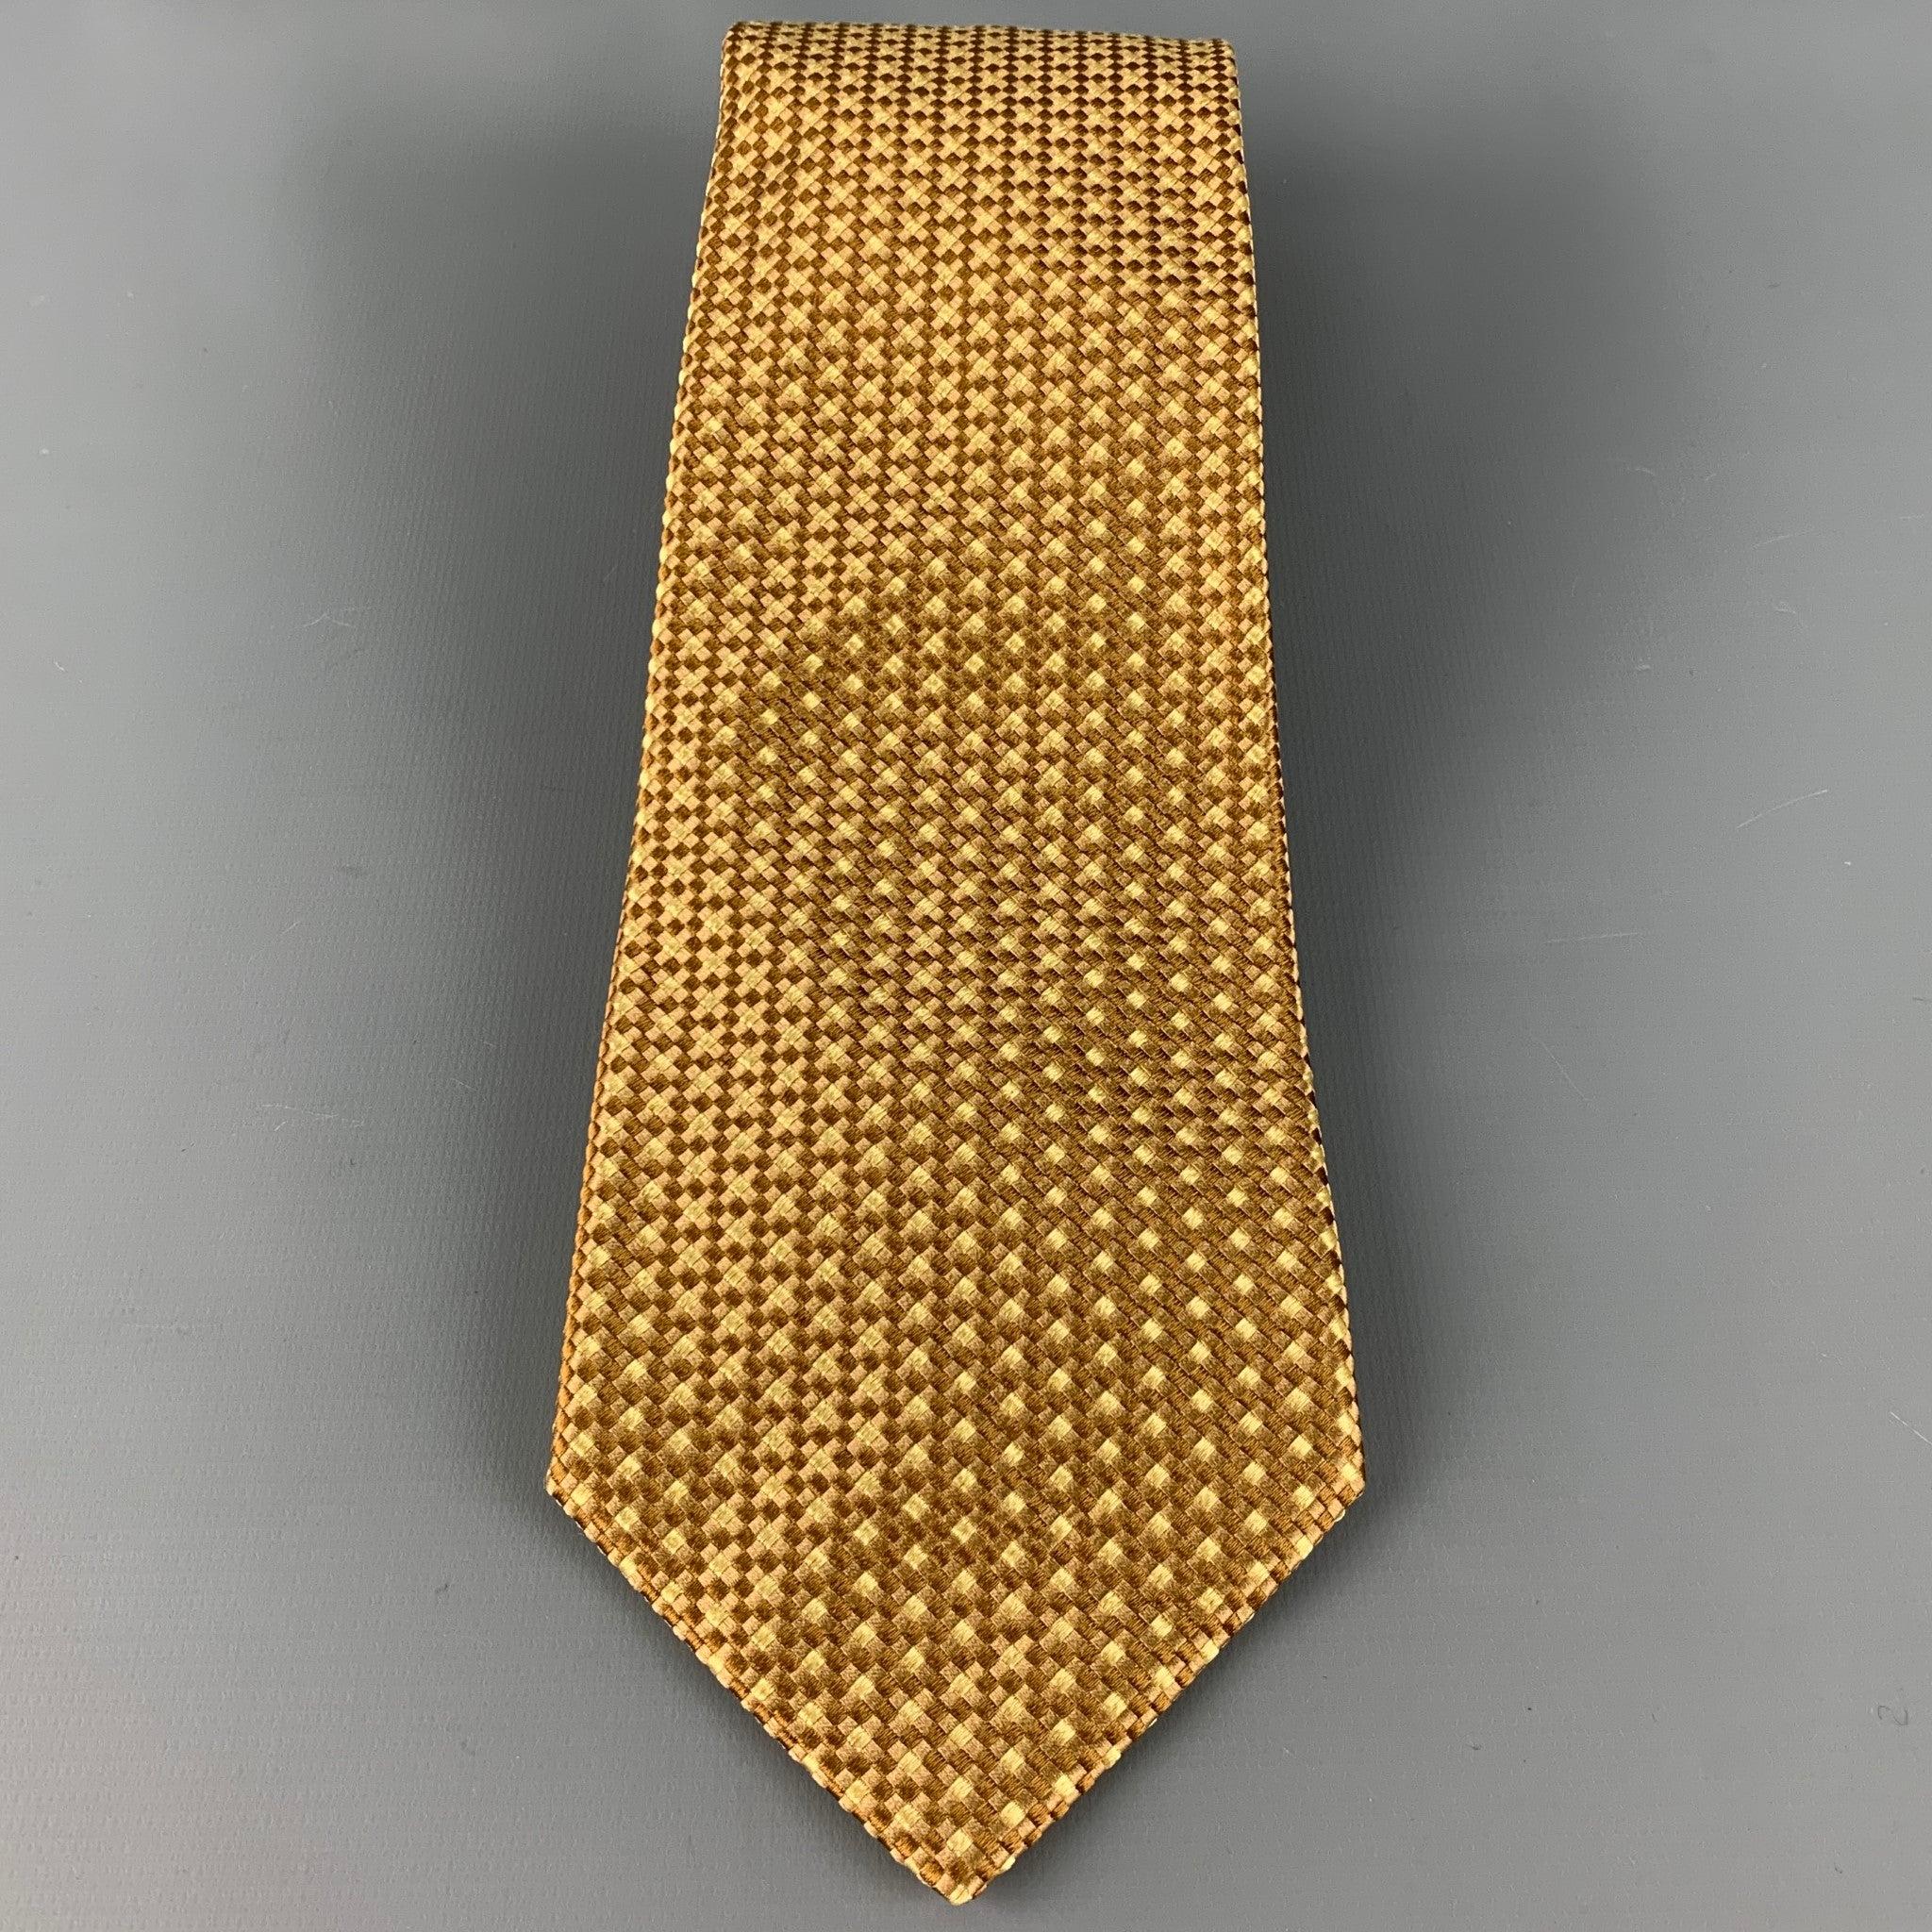 BORRELLI
Krawatte aus 100 % Seide mit einem beigefarbenen und taupefarbenen Karomuster. Made in Italy. sehr guter gebrauchter Zustand. 

Abmessungen: 
  Breite: 4 Zoll Länge: 57,5 Zoll 
  
  
 
Sui Generis-Referenz: 126595
Kategorie: Krawatte
Mehr